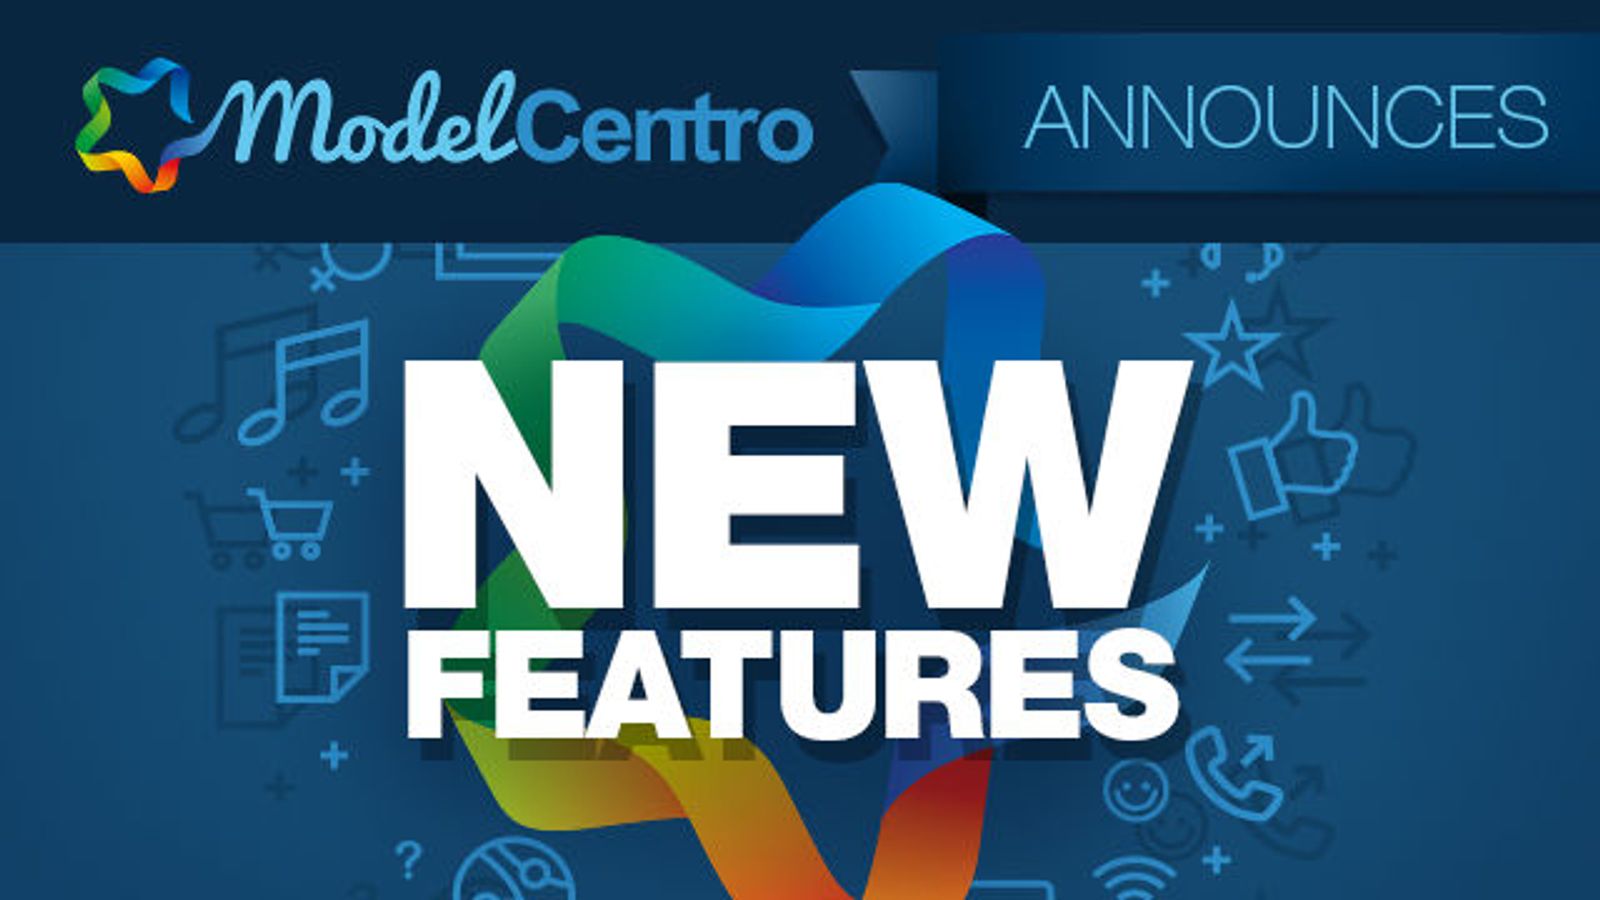 ModelCentro Announces New Platform Features